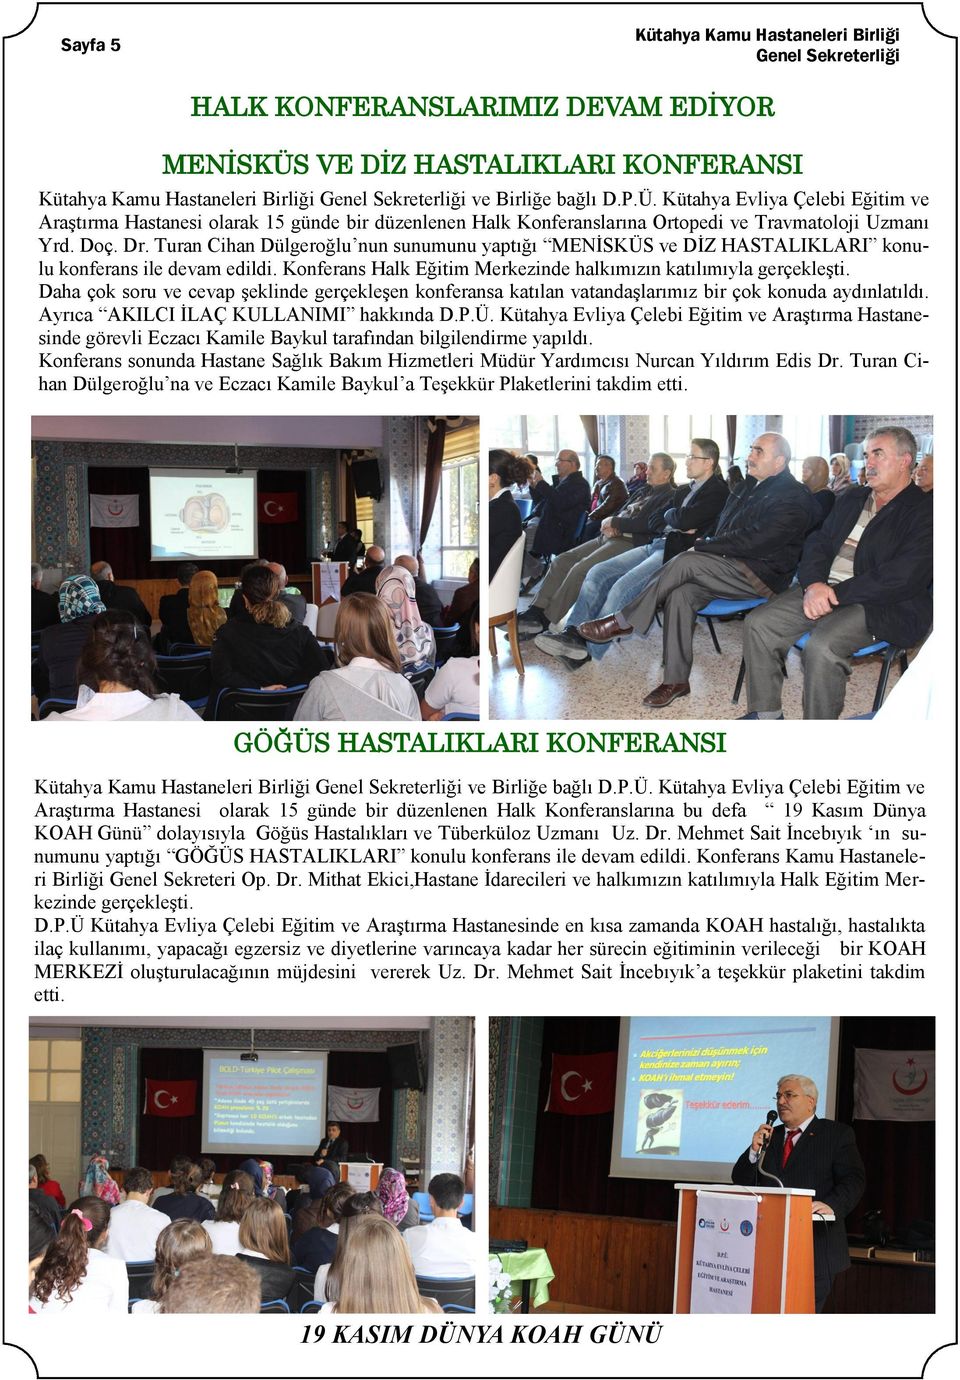 Turan Cihan Dülgeroğlu nun sunumunu yaptığı MENĠSKÜS ve DĠZ HASTALIKLARI konulu konferans ile devam edildi. Konferans Halk Eğitim Merkezinde halkımızın katılımıyla gerçekleģti.